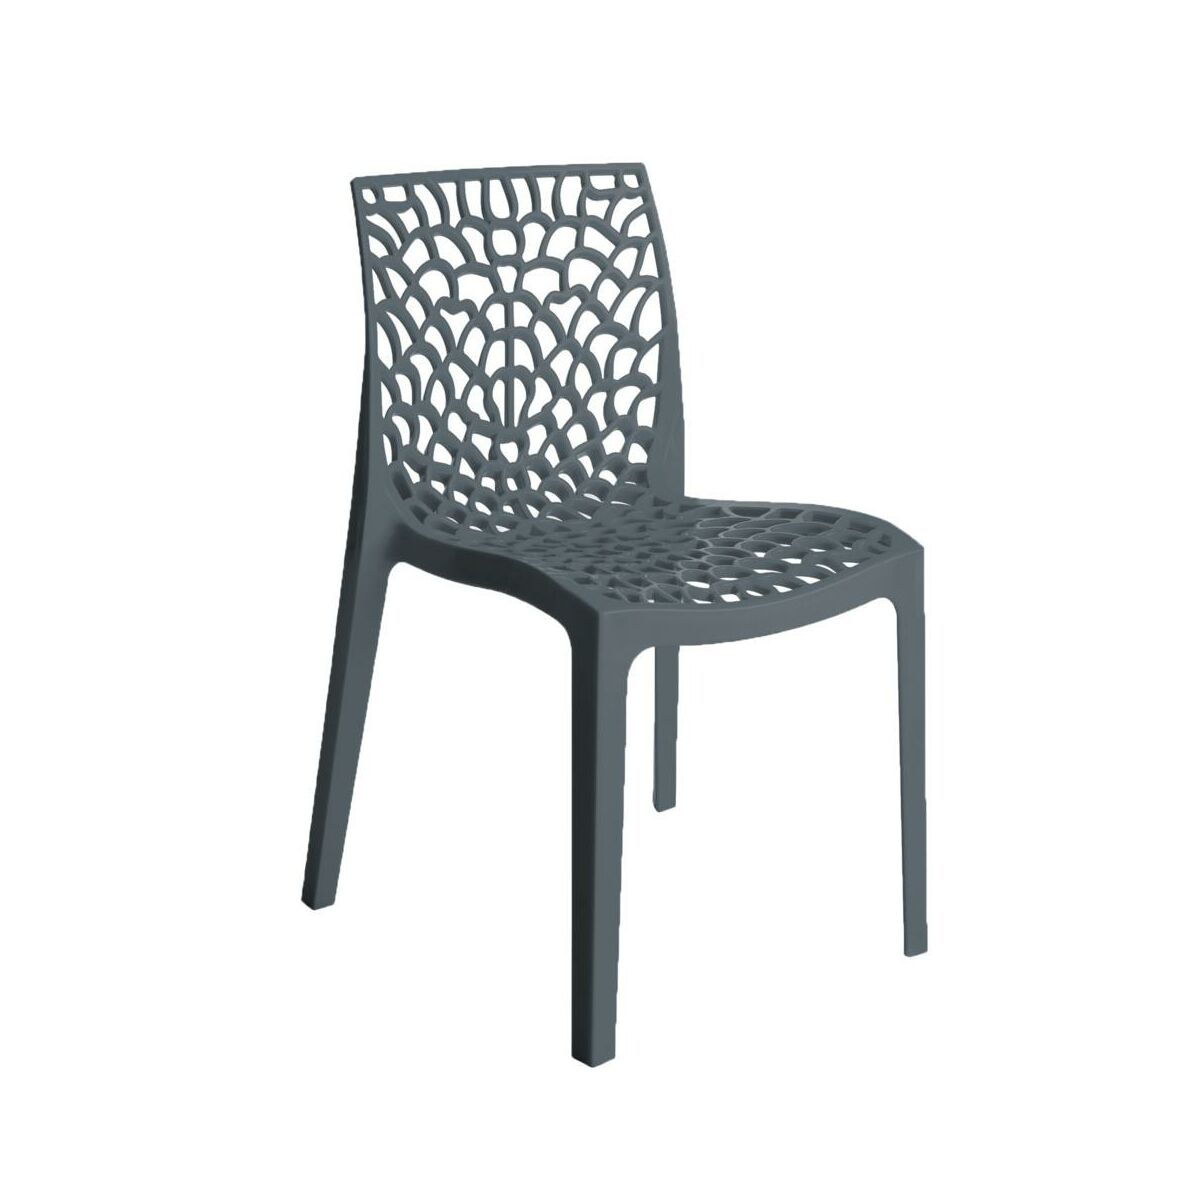 Krzeslo Ogrodowe Plastikowe Gruvyer Krzesla Fotele Lawki Ogrodowe W Atrakcyjnej Cenie W Sklepach Leroy Merlin